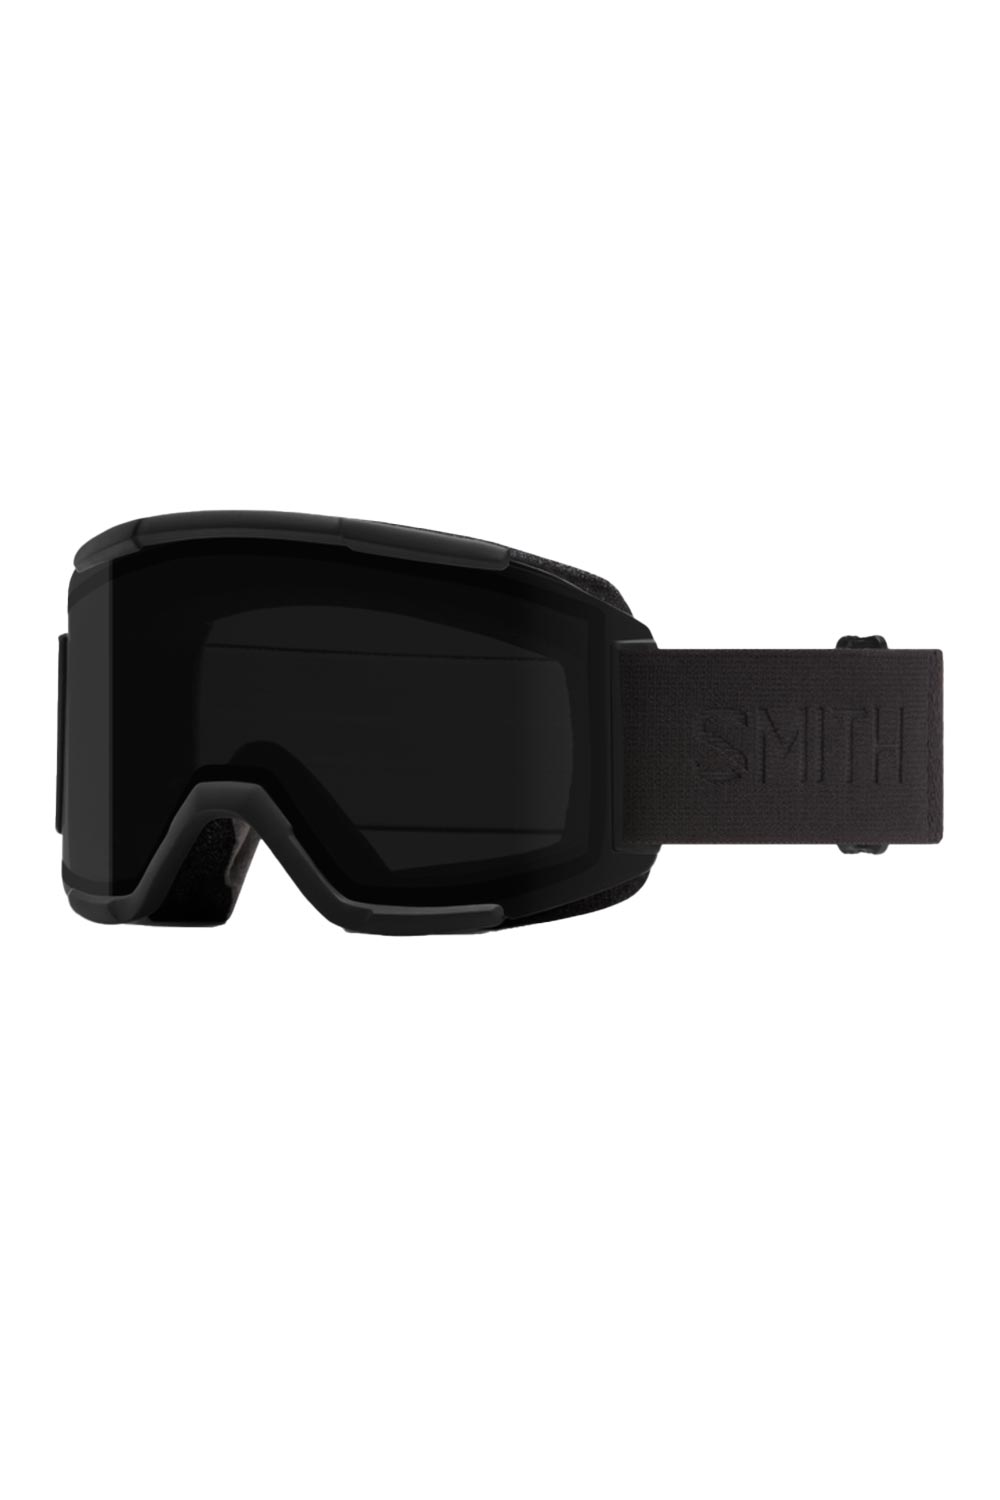 Smith Squad ski goggles, blackout, black strap black lens